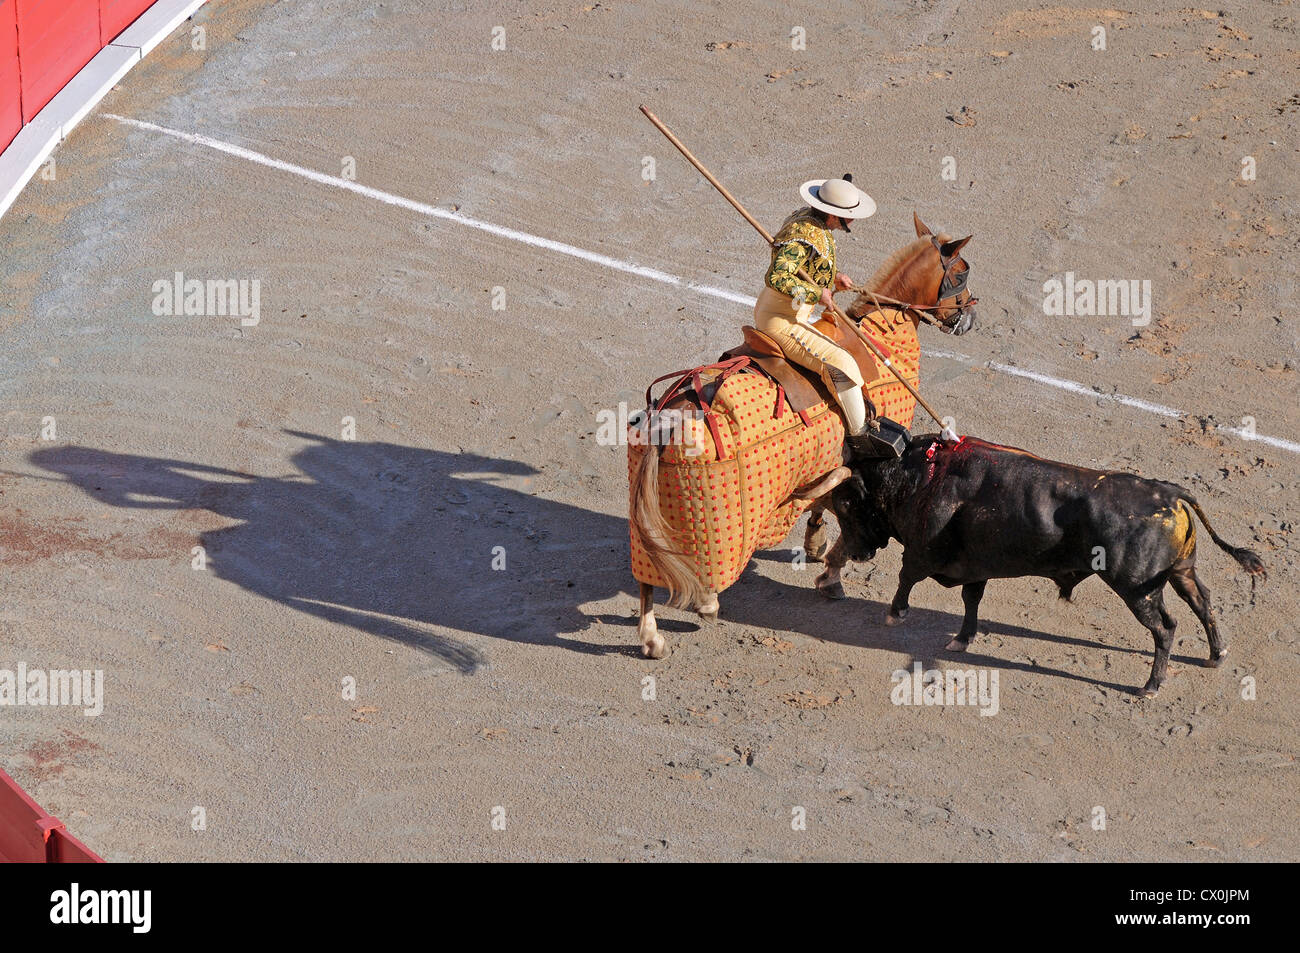 Picador auf Pferd von Pelo Lanzen Bull im Roman Arena oder Amphitheater in Arles Frankreich Bull kämpfen Corrida geschützt montiert Stockfoto